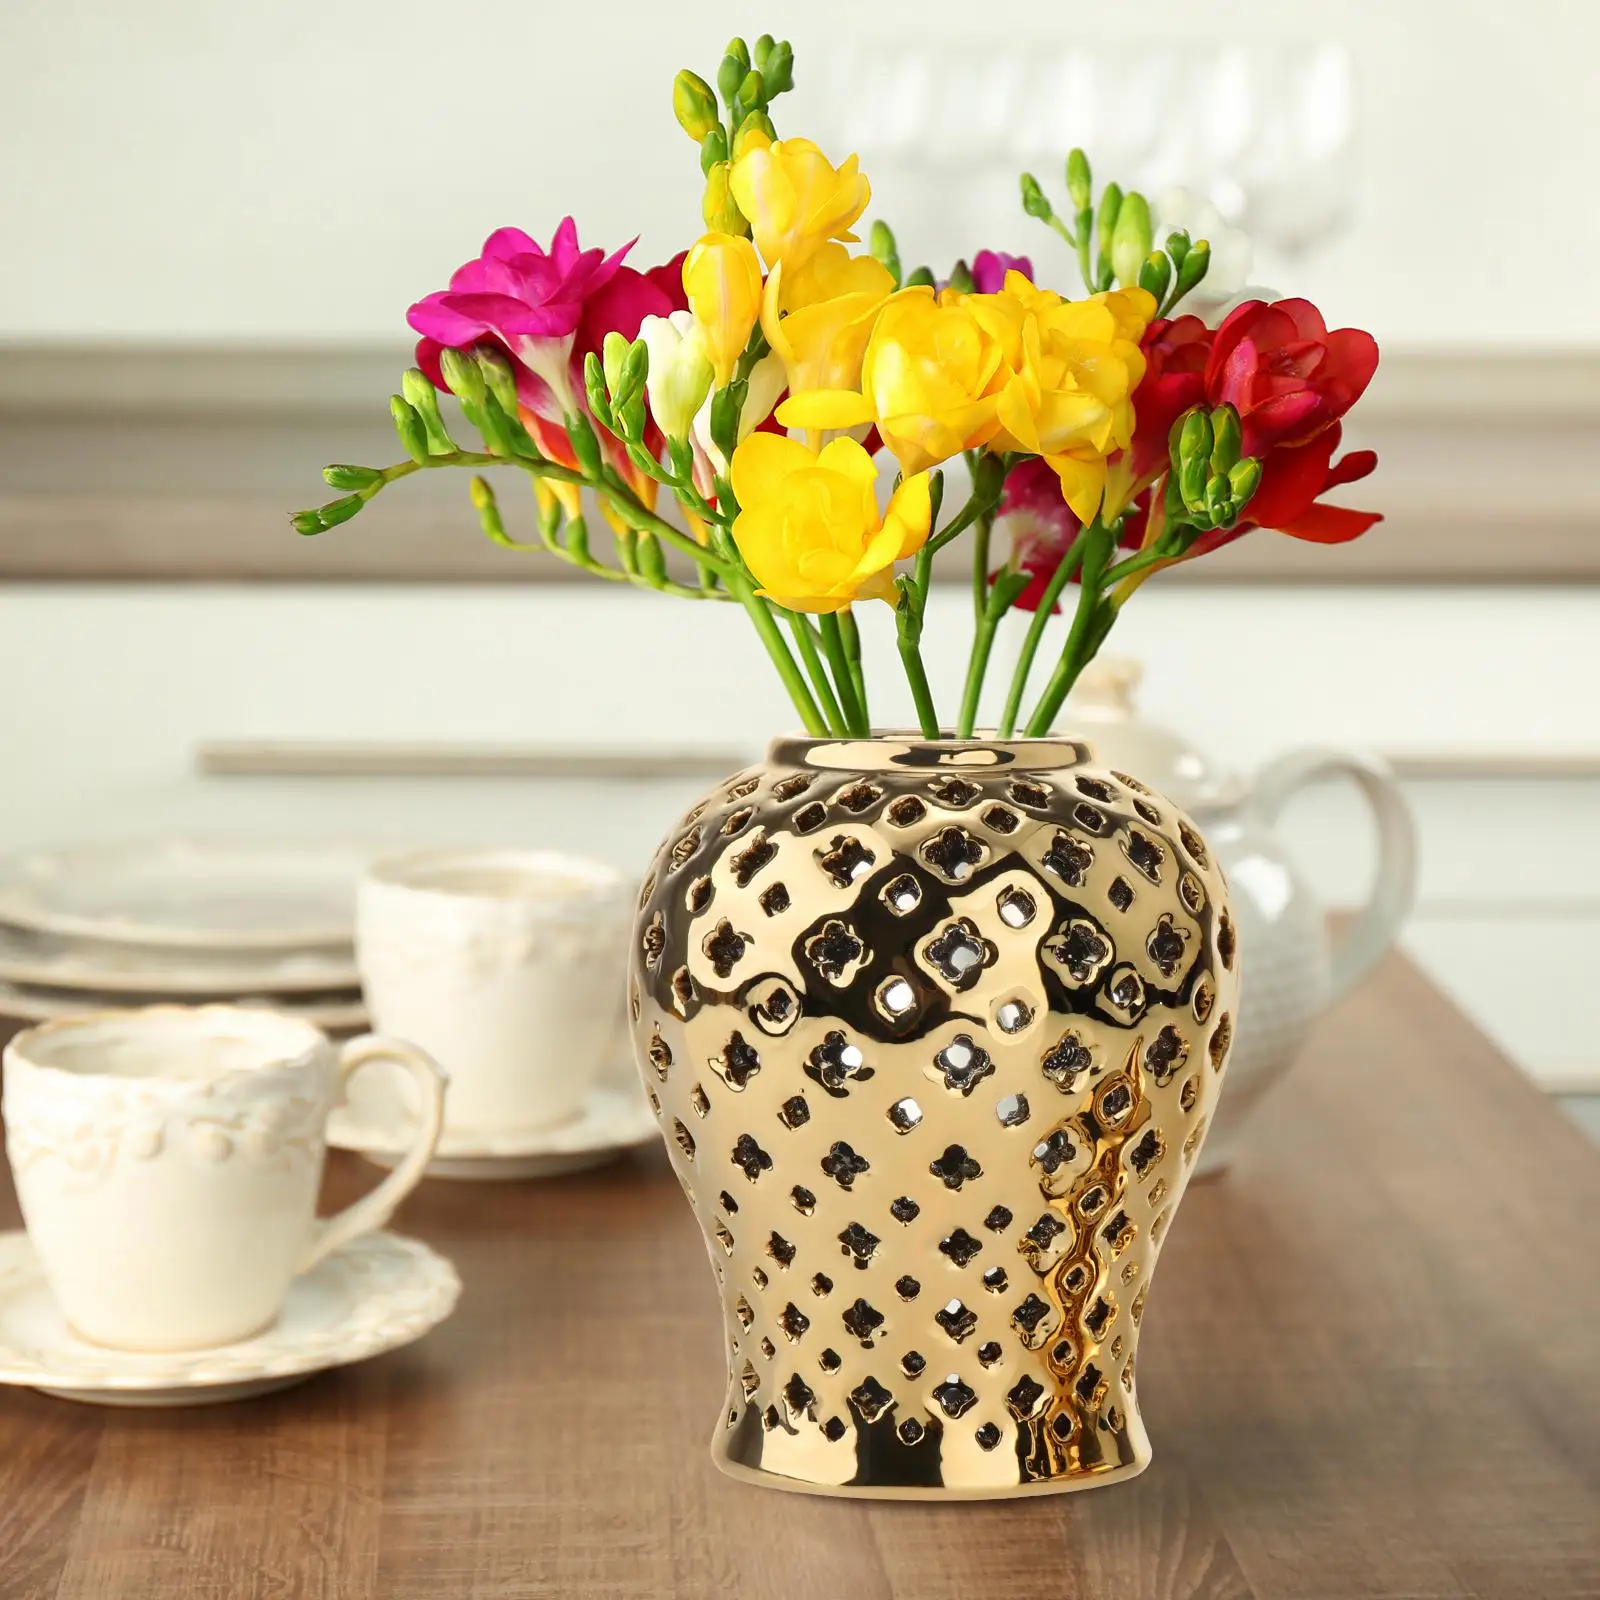 Traditional Ceramic Hollow Out Ginger Jar Porcelain Storage Jar Vase Table